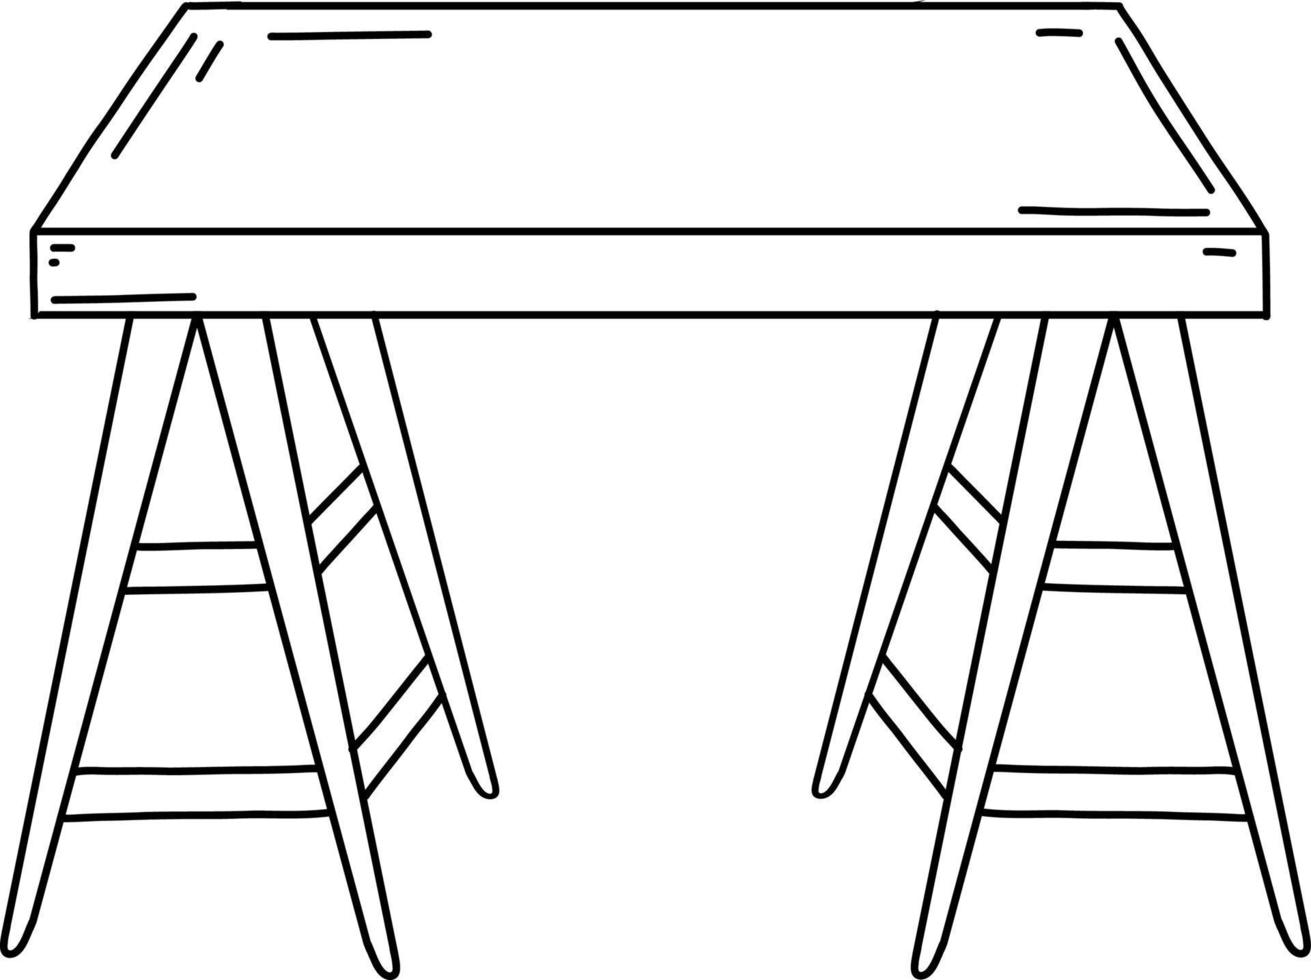 schizzo da scrivania. illustrazione vettoriale in stile scarabocchio disegnata a mano